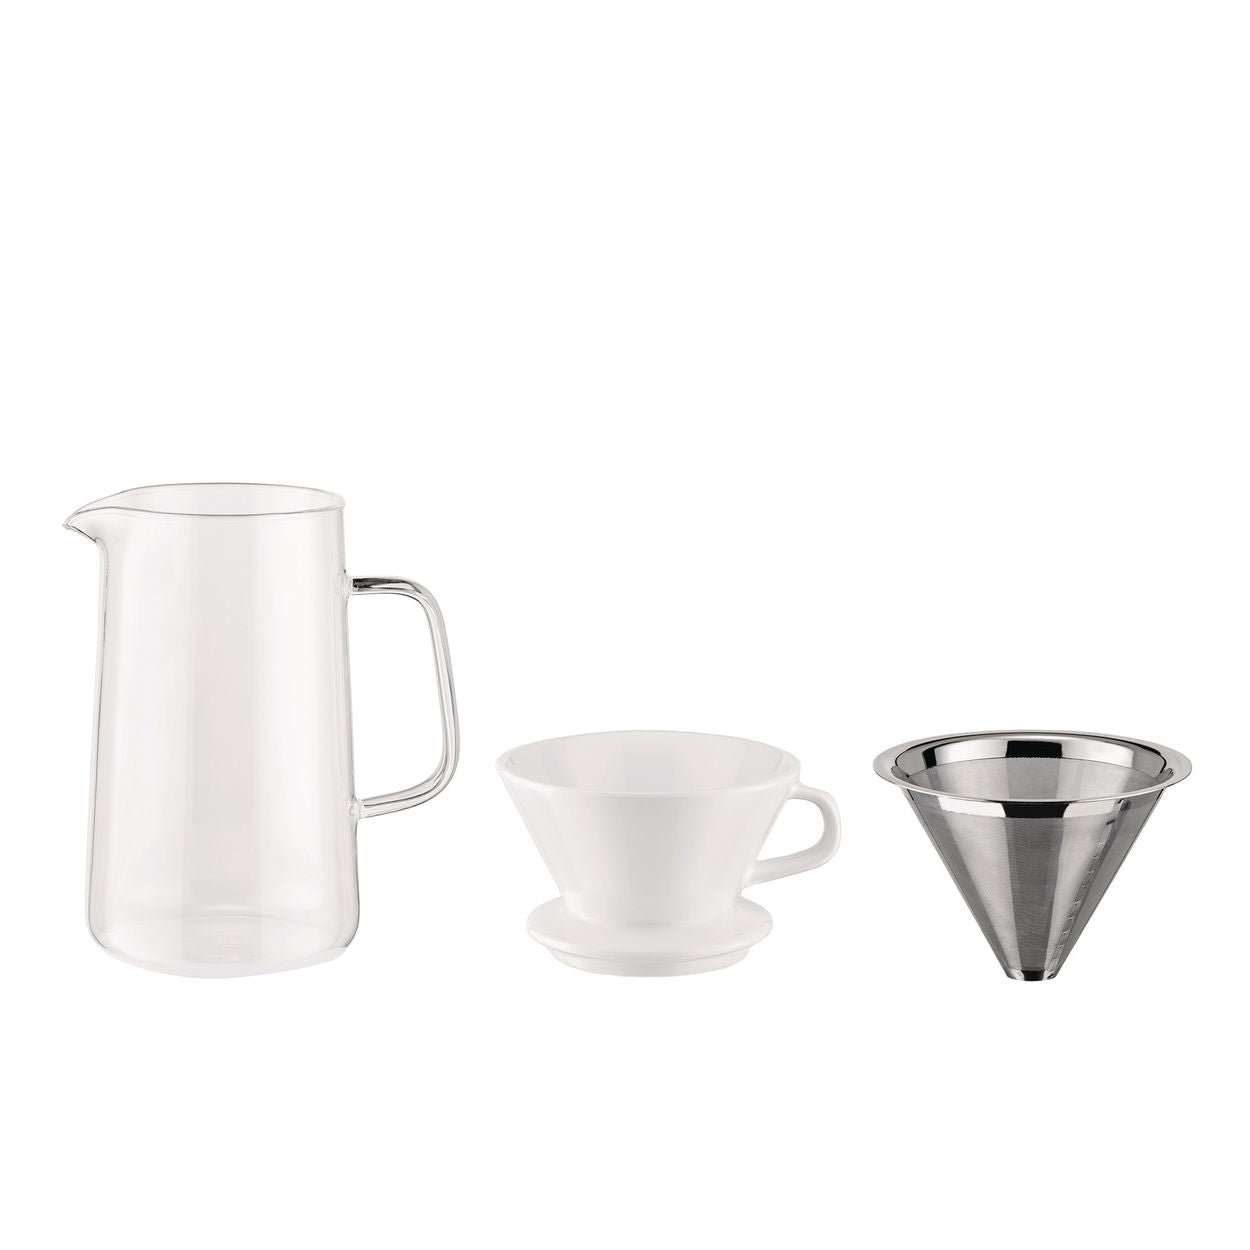 Alessi Langsamer Kaffee, Accessoires für Kaffeemühle (Krug + Nettofilter + Filterhalter)